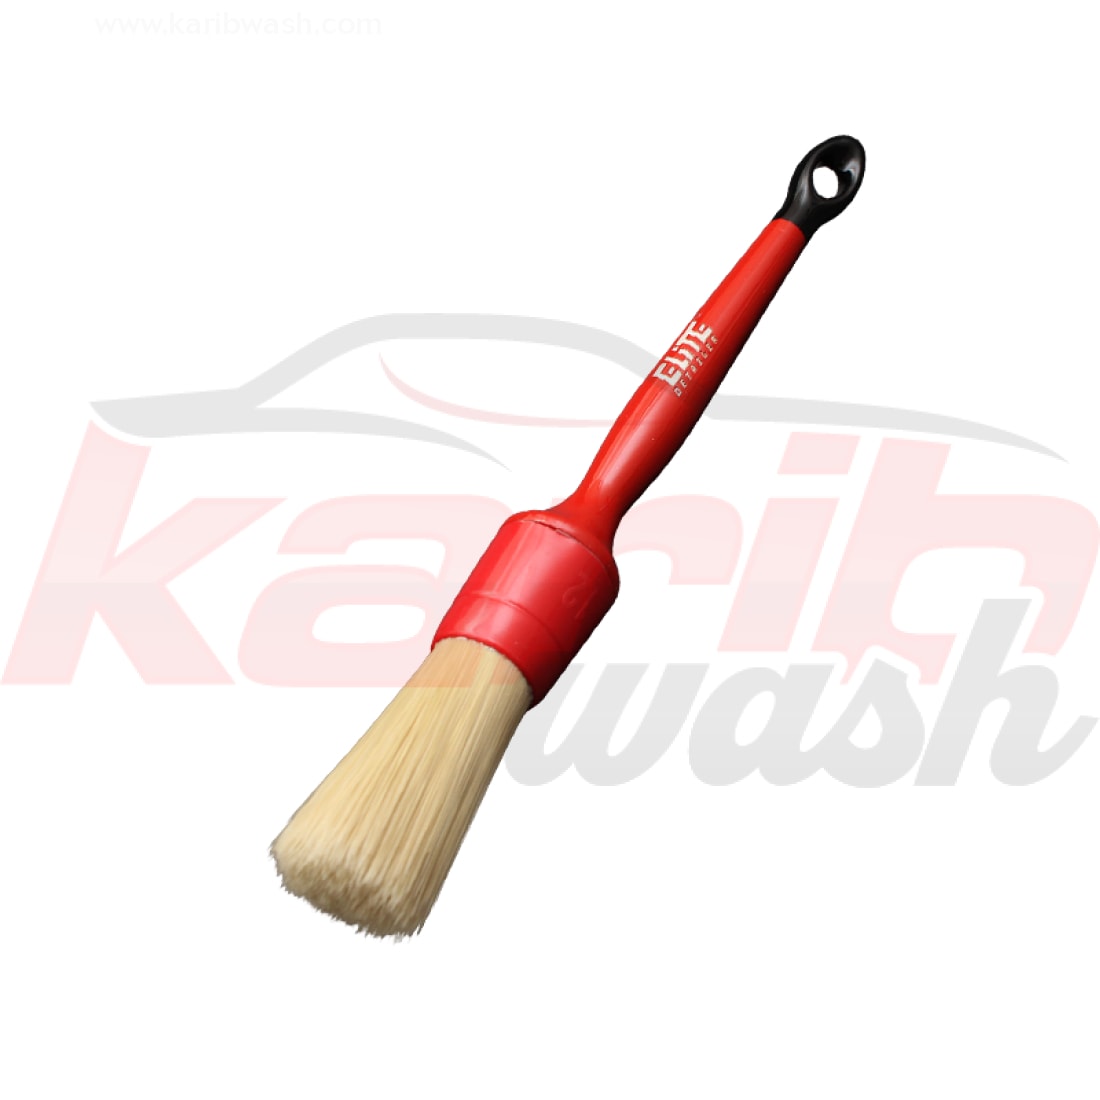 Soft Detailing Brush 18 - 32mm - ELITE DETAILER - KARIBWASH